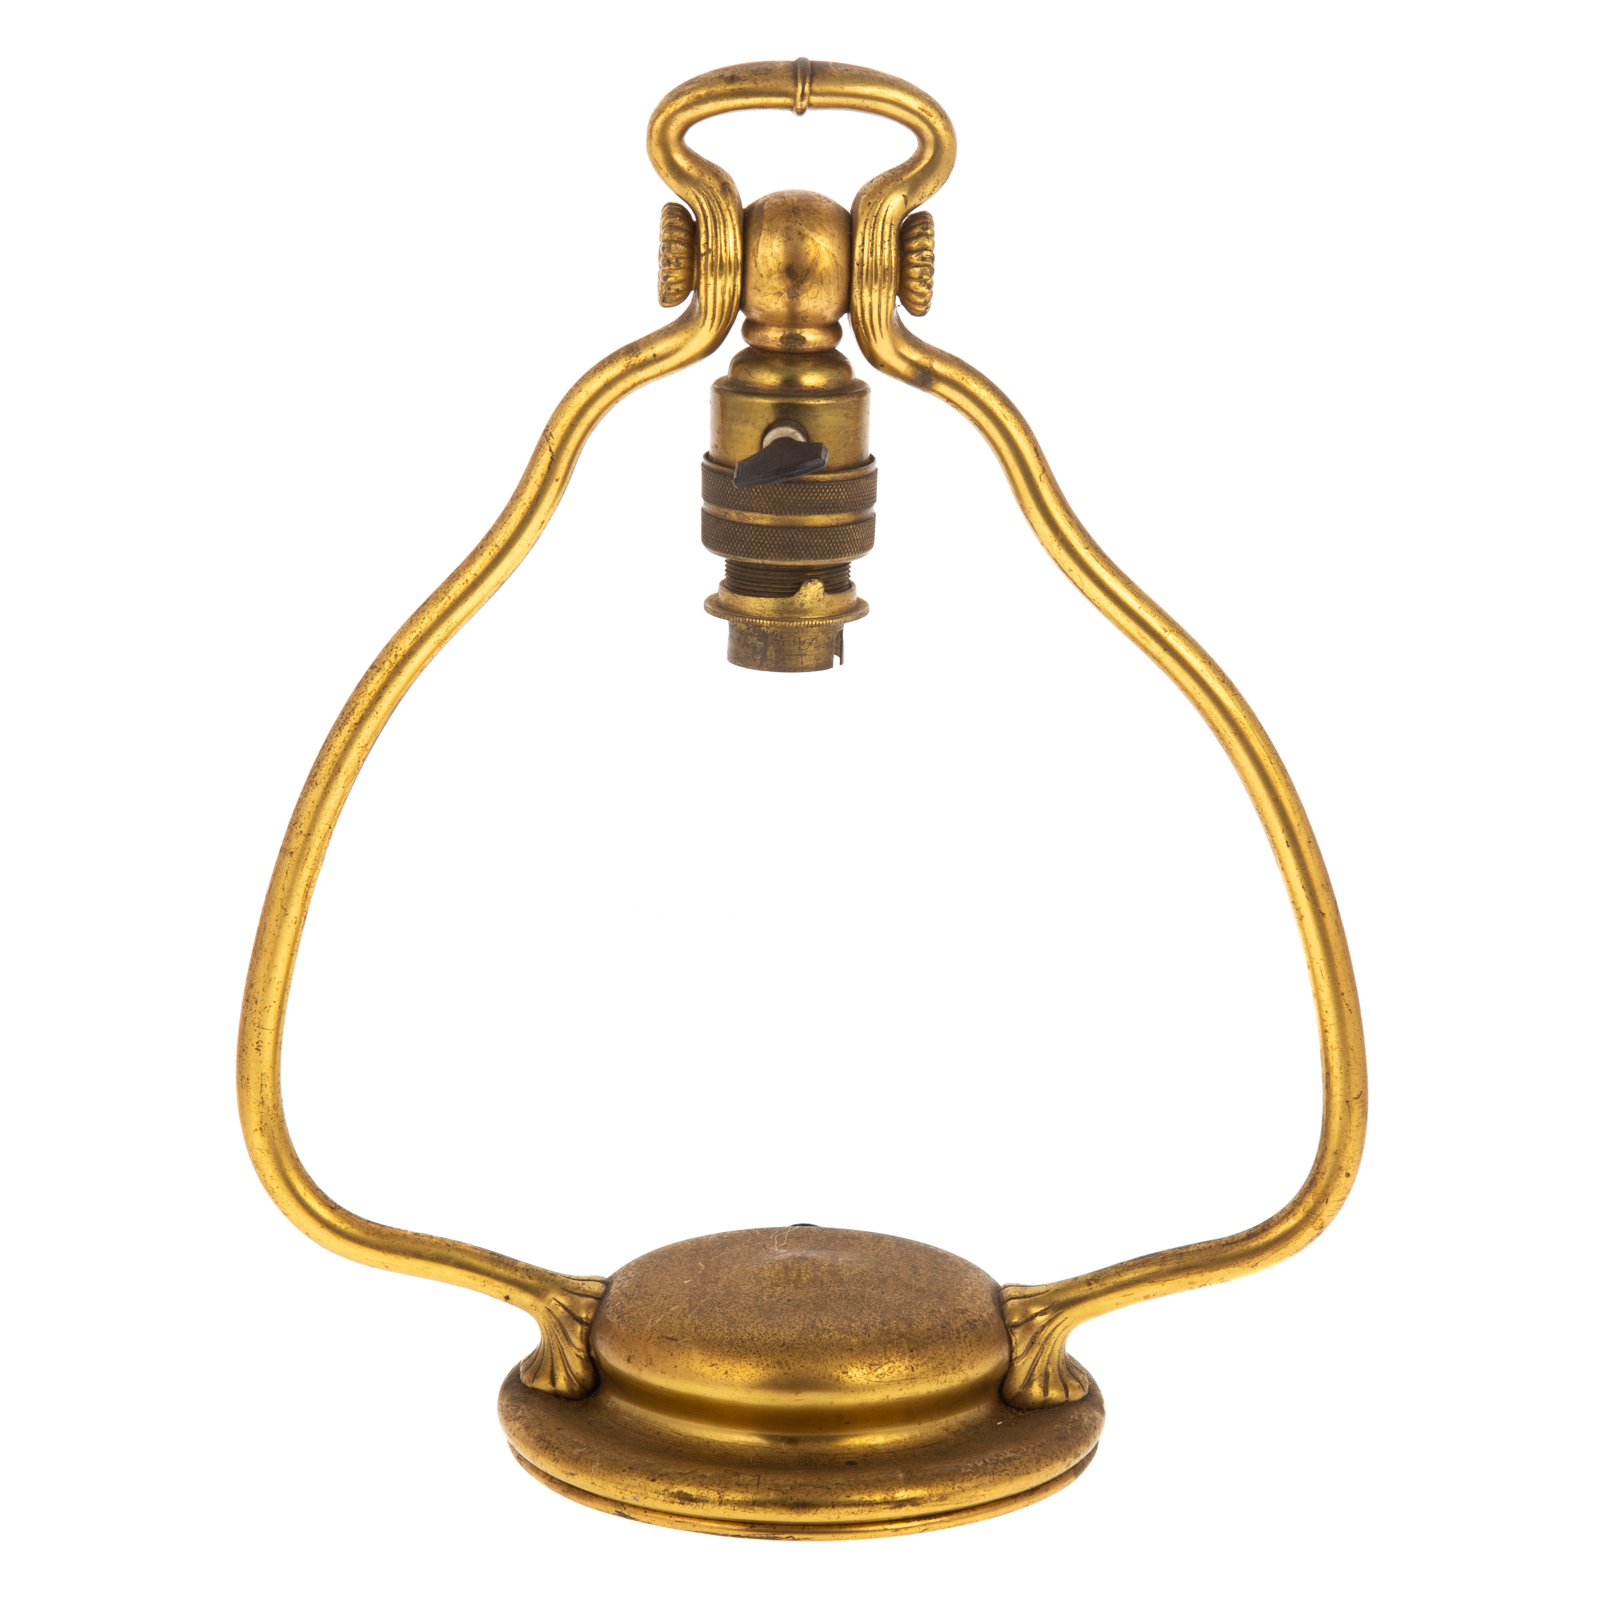 TIFFANY GILT BRONZE HARP DESK LAMP 2e9a52